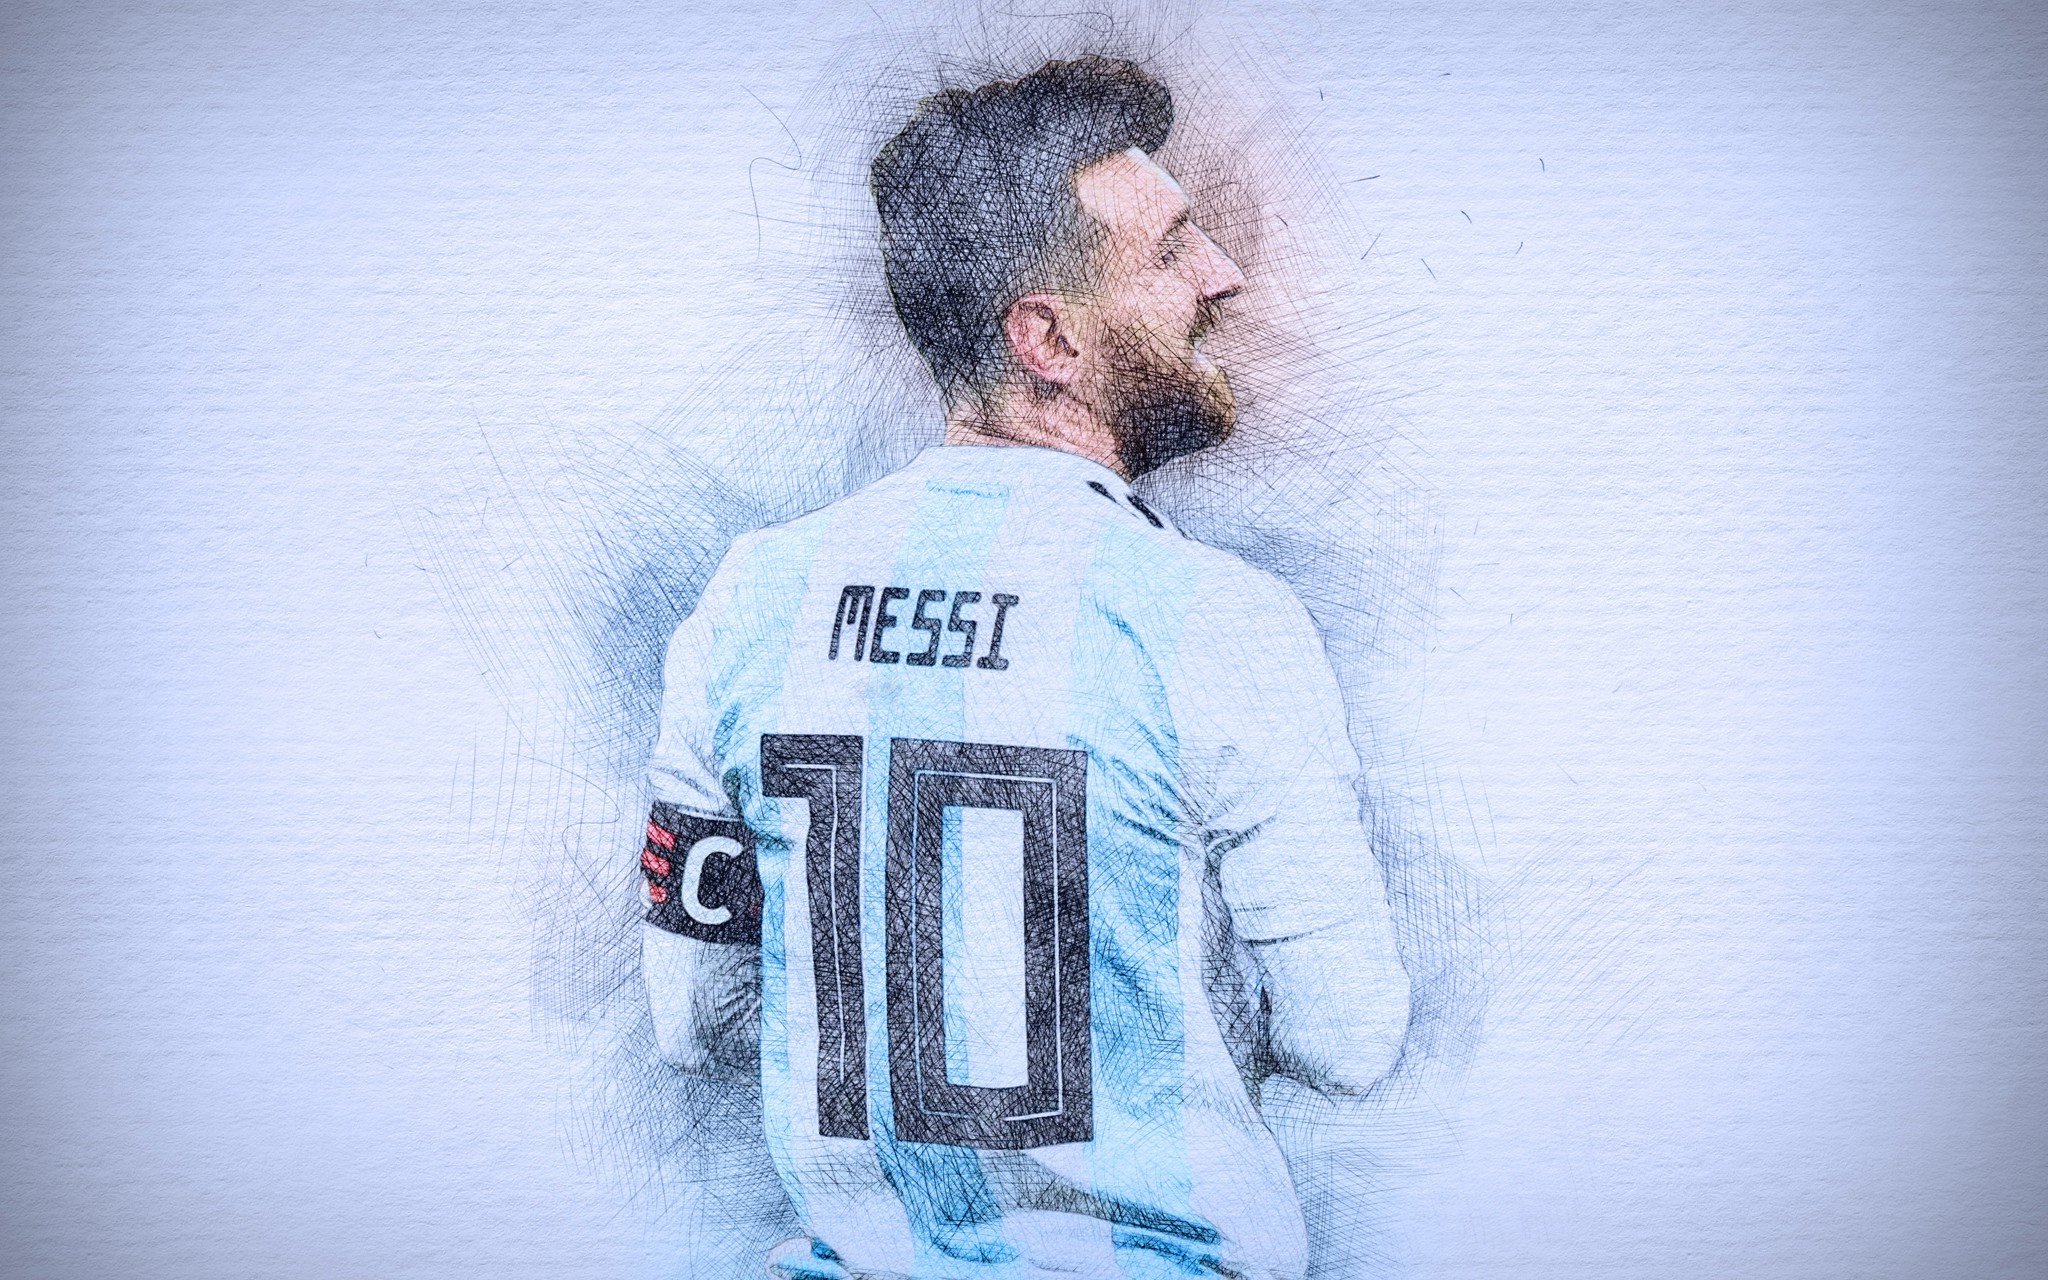 Hình nền Messi 4K 3D cao cấp sẽ đưa bạn đến với thế giới tuyệt đẹp của một cầu thủ vĩ đại nhất mọi thời đại. Với độ phân giải cao, điểm ảnh sắc nét, bạn sẽ có trải nghiệm không thể nào quên.